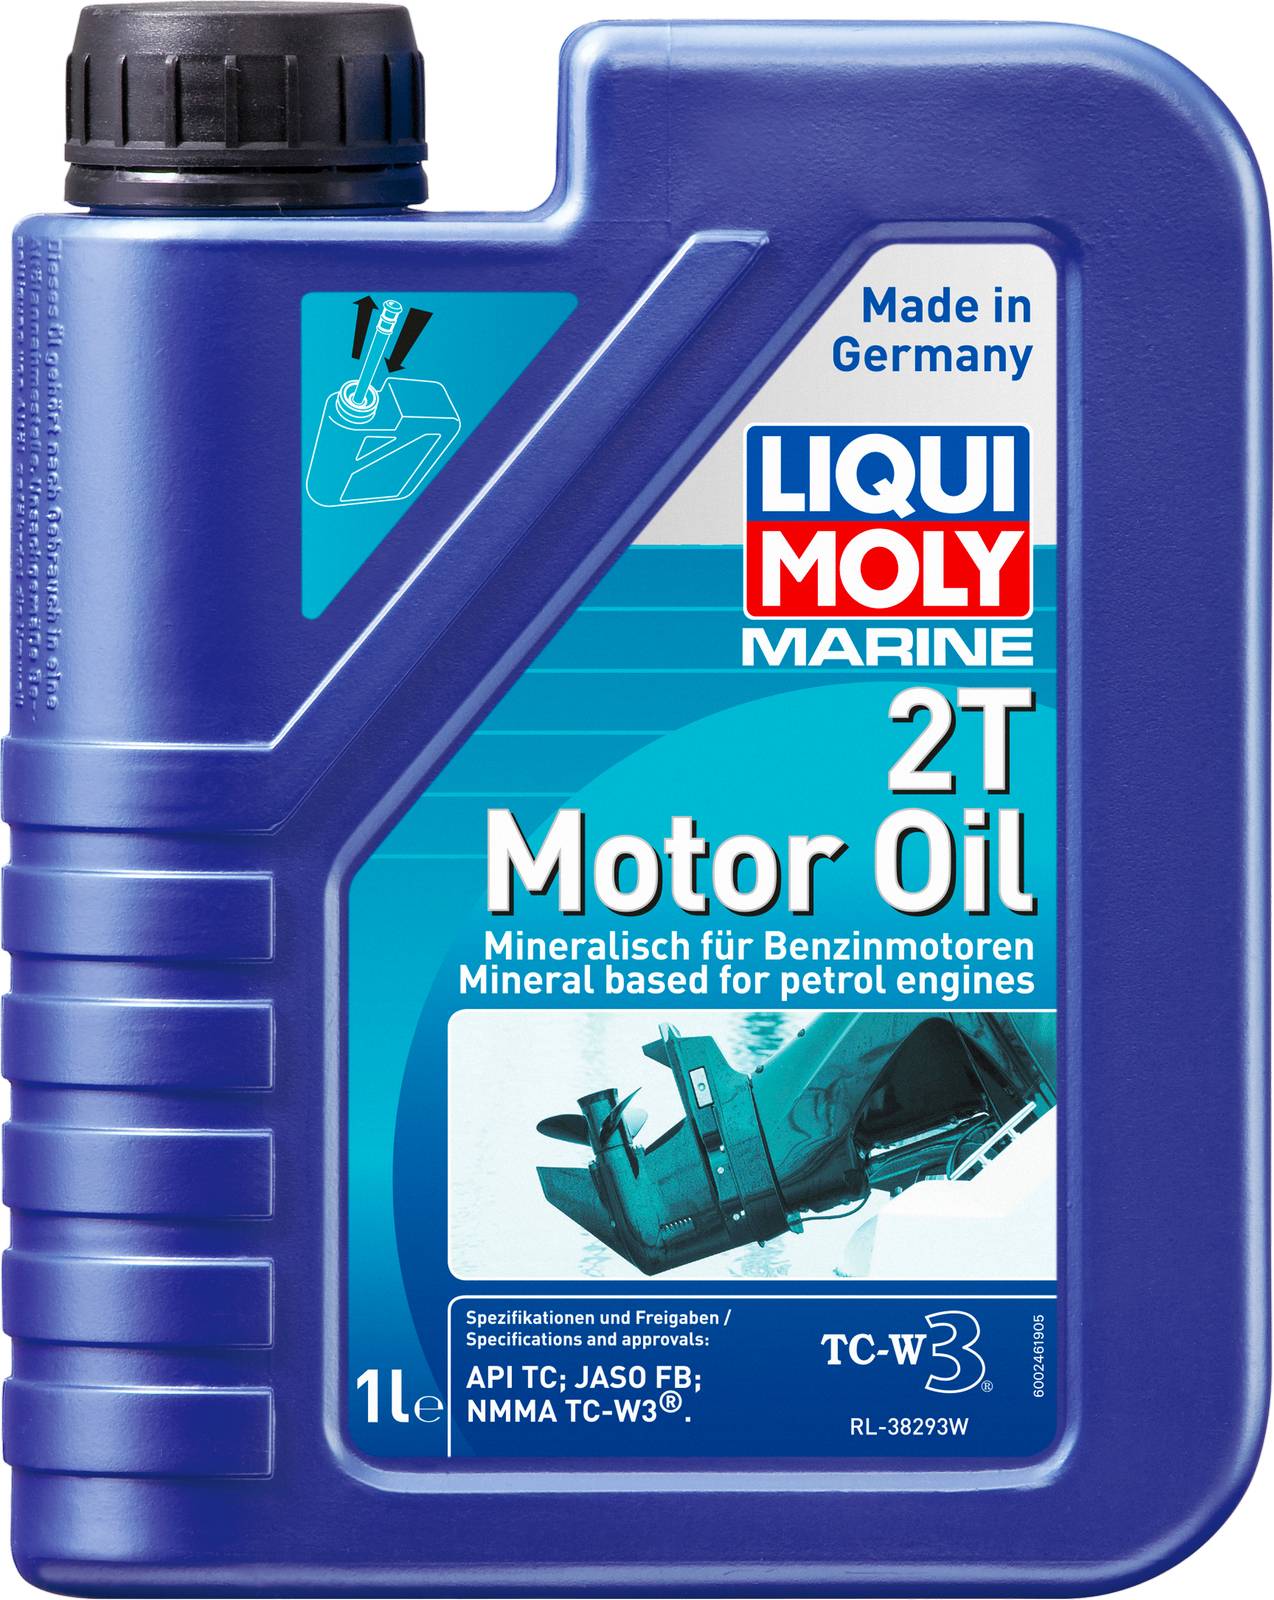 Моторное масло для водной техники Liqui Moly Marine 2T Motor Oil 1л